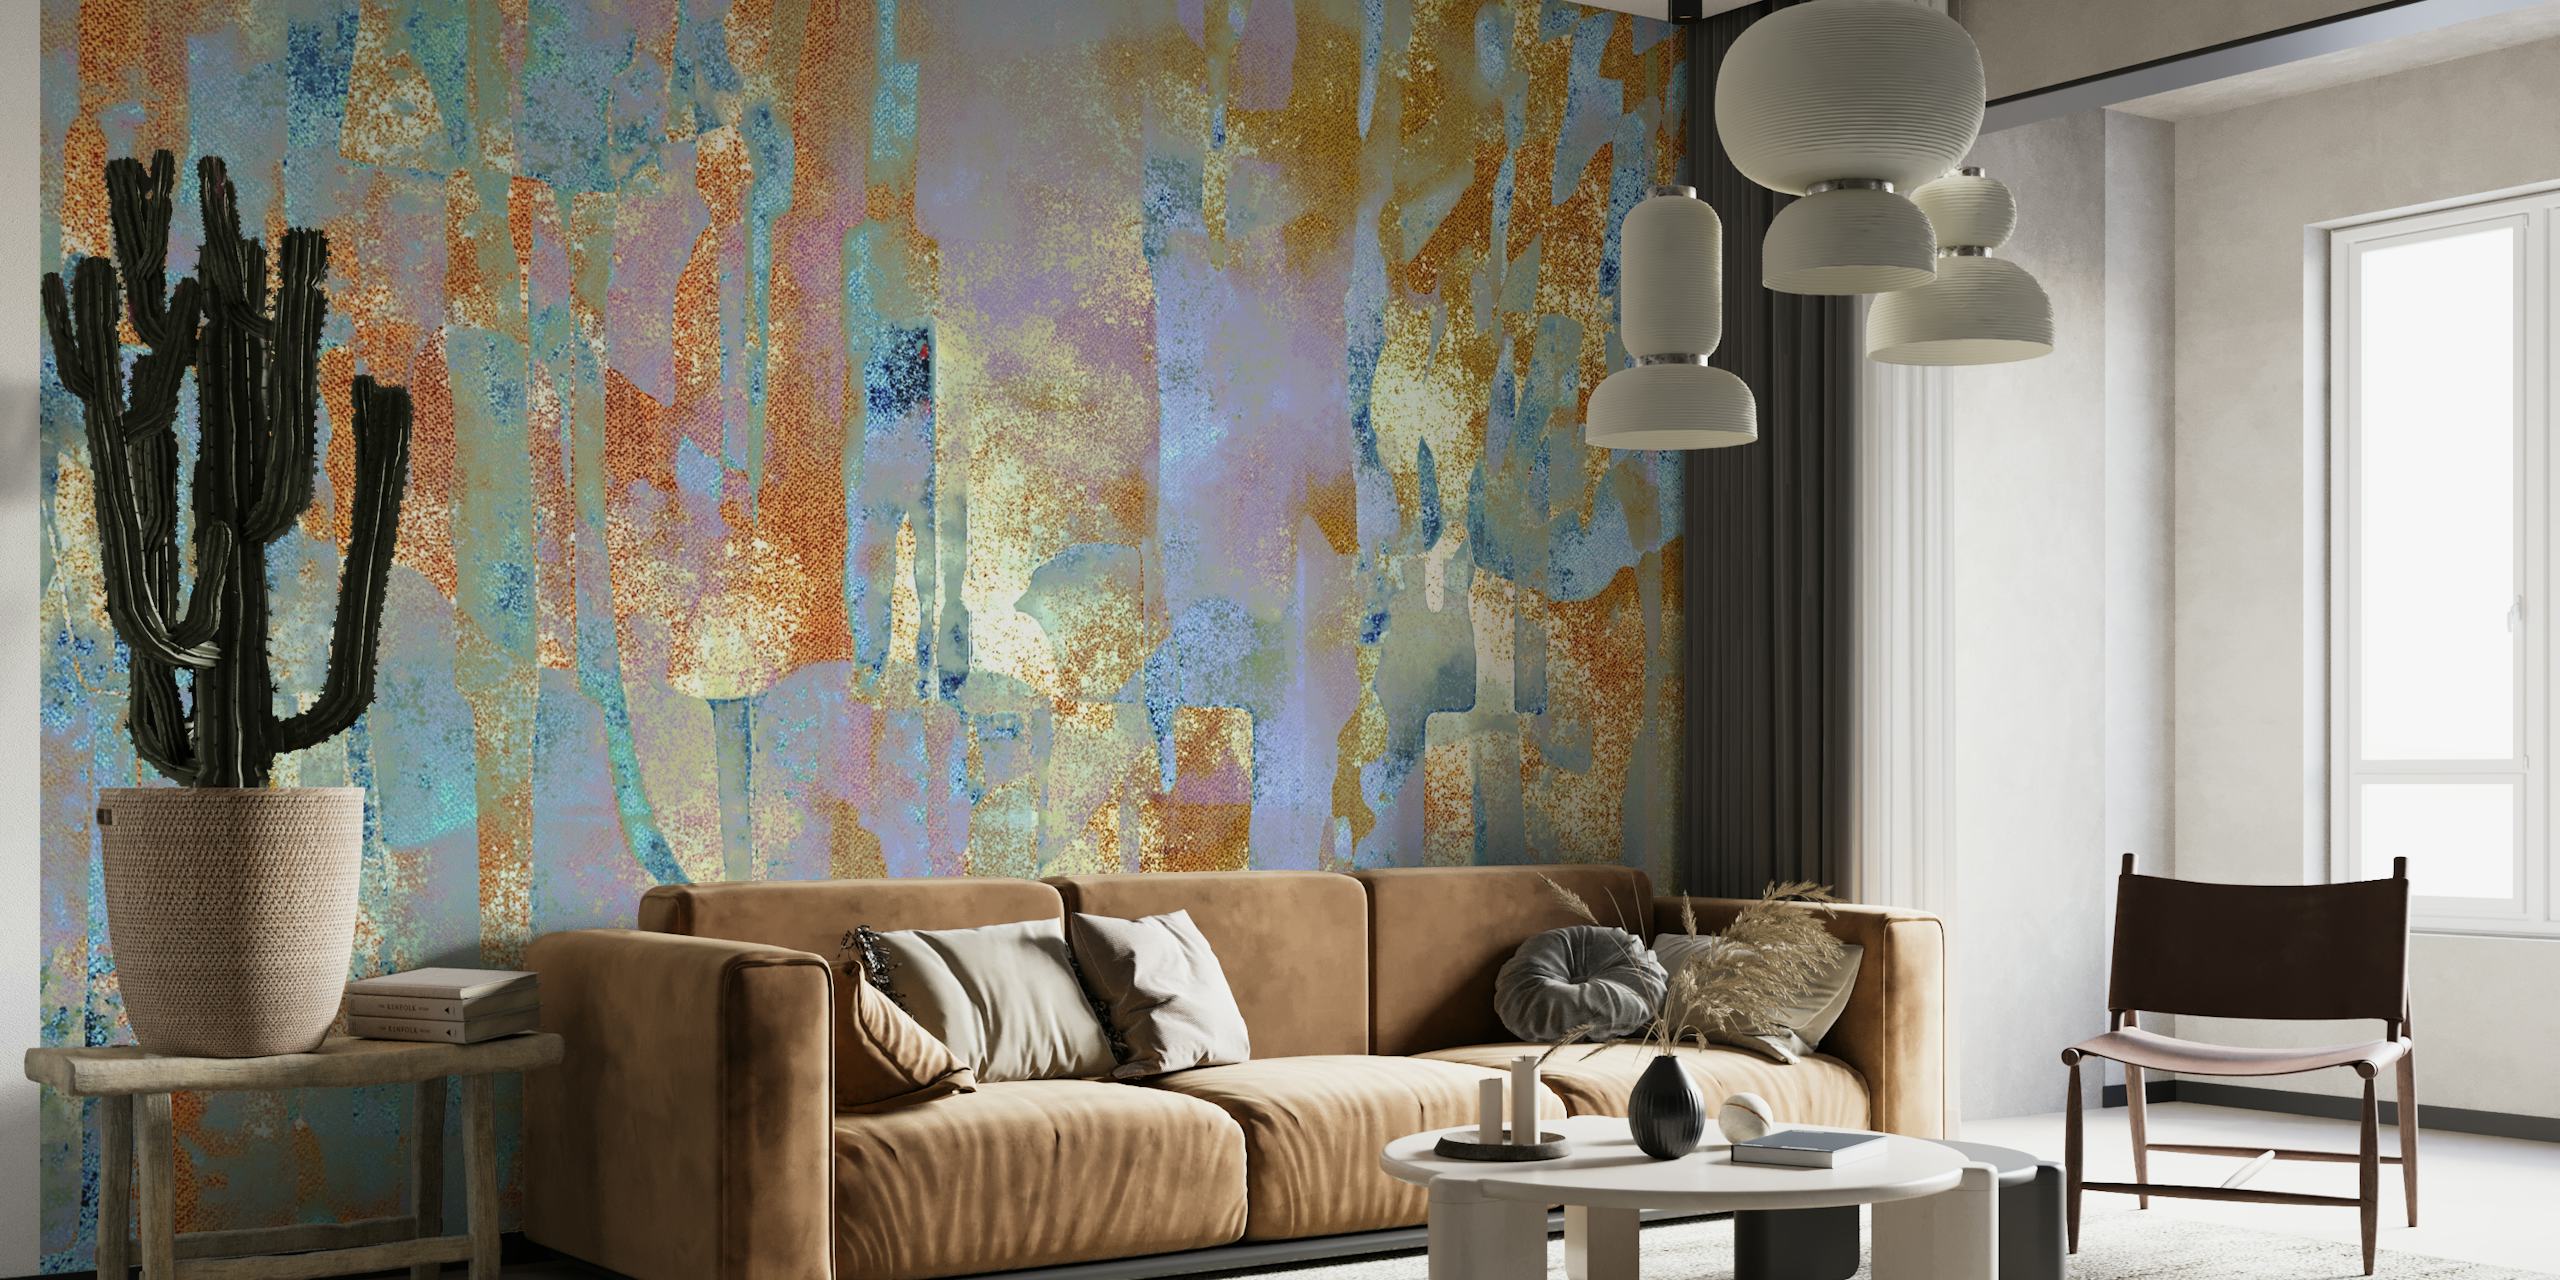 Zidni mural inspiriran Afričkom bojom na blatnoj tkanini s bogatim teksturama i zemljanim tonovima